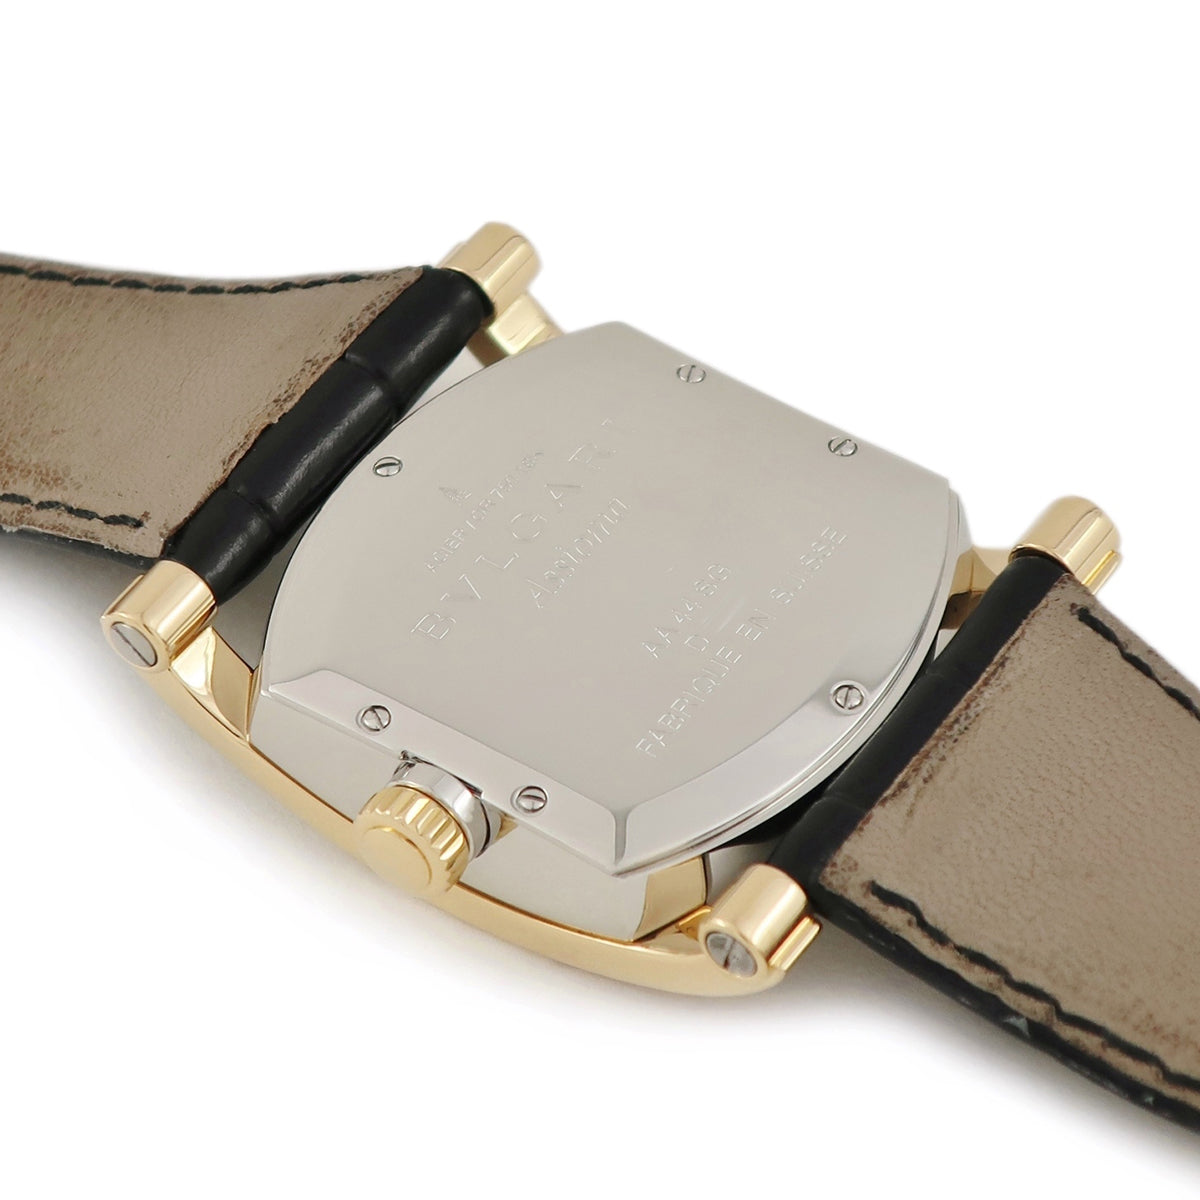 ブルガリ BVLGARI アショーマ コンビ AA44SG メンズ 腕時計 デイト シルバー 文字盤 K18YG イエローゴールド 自動巻き Assioma VLP 90189555